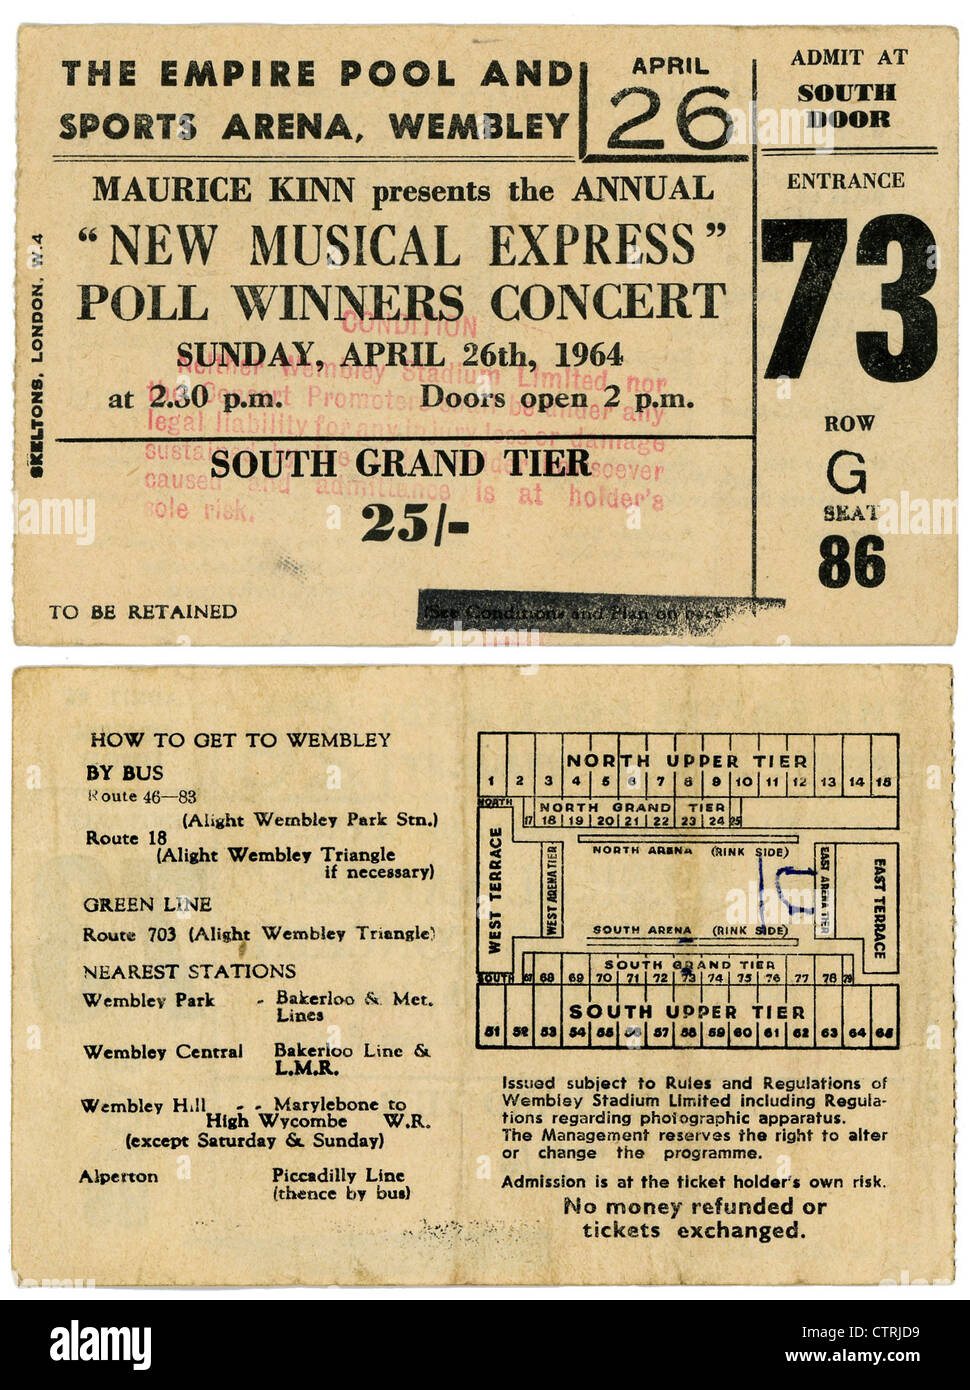 000996 - le talon de billet de concert des Beatles le NME Poll Winners Concert au Wembley Empire Pool, le 26 avril 1964 Banque D'Images